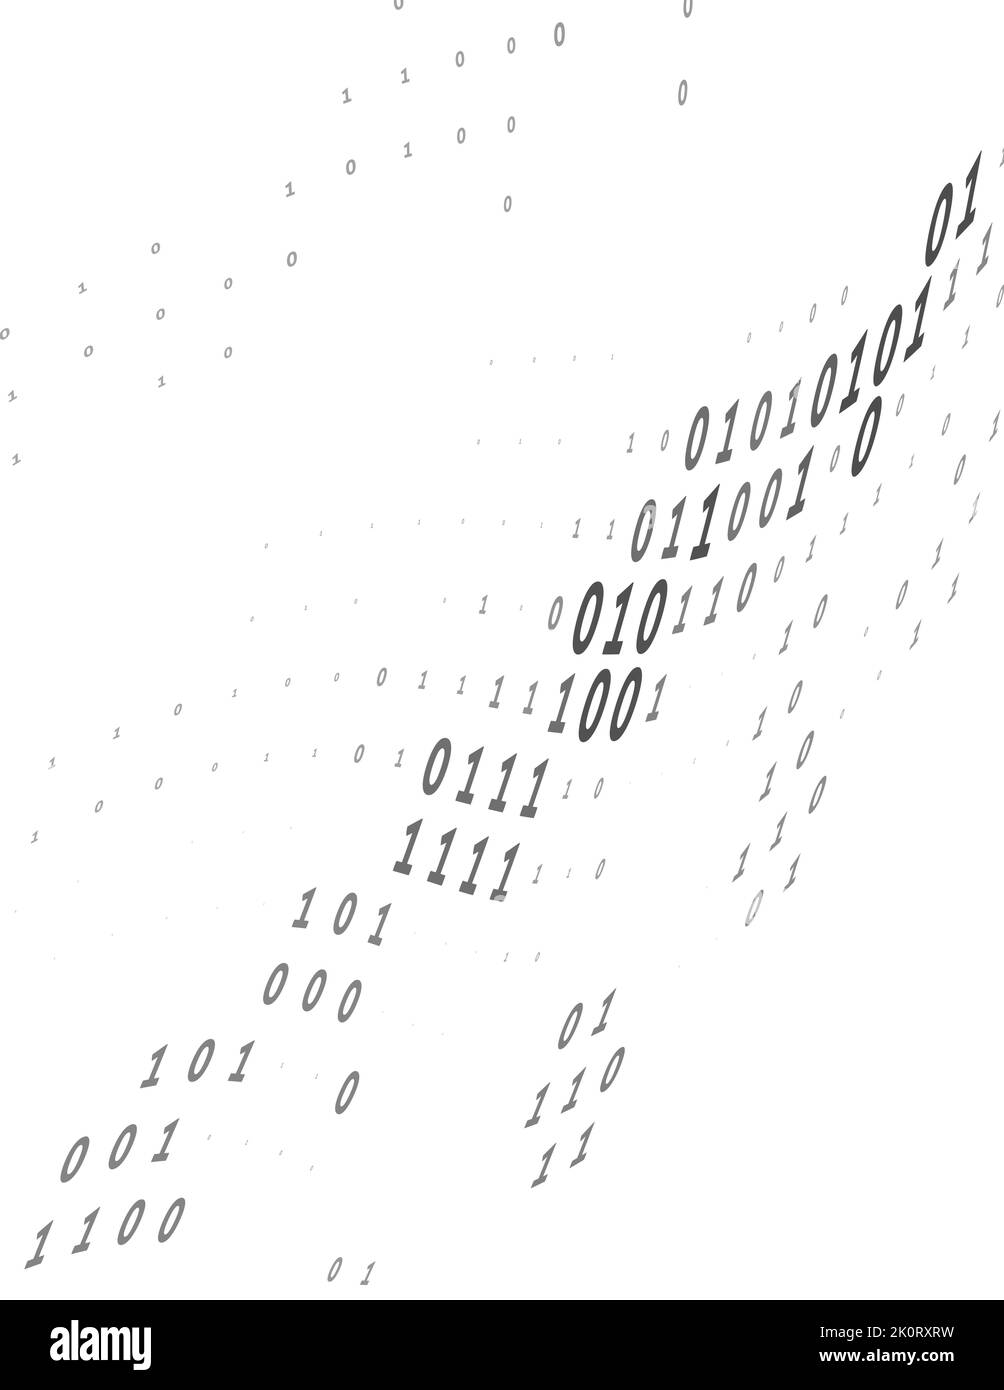 Visualisation de la diffusion numérique. Arrière-plan de code binaire par des zéros et des zéros déformés. Motif vectoriel Illustration de Vecteur